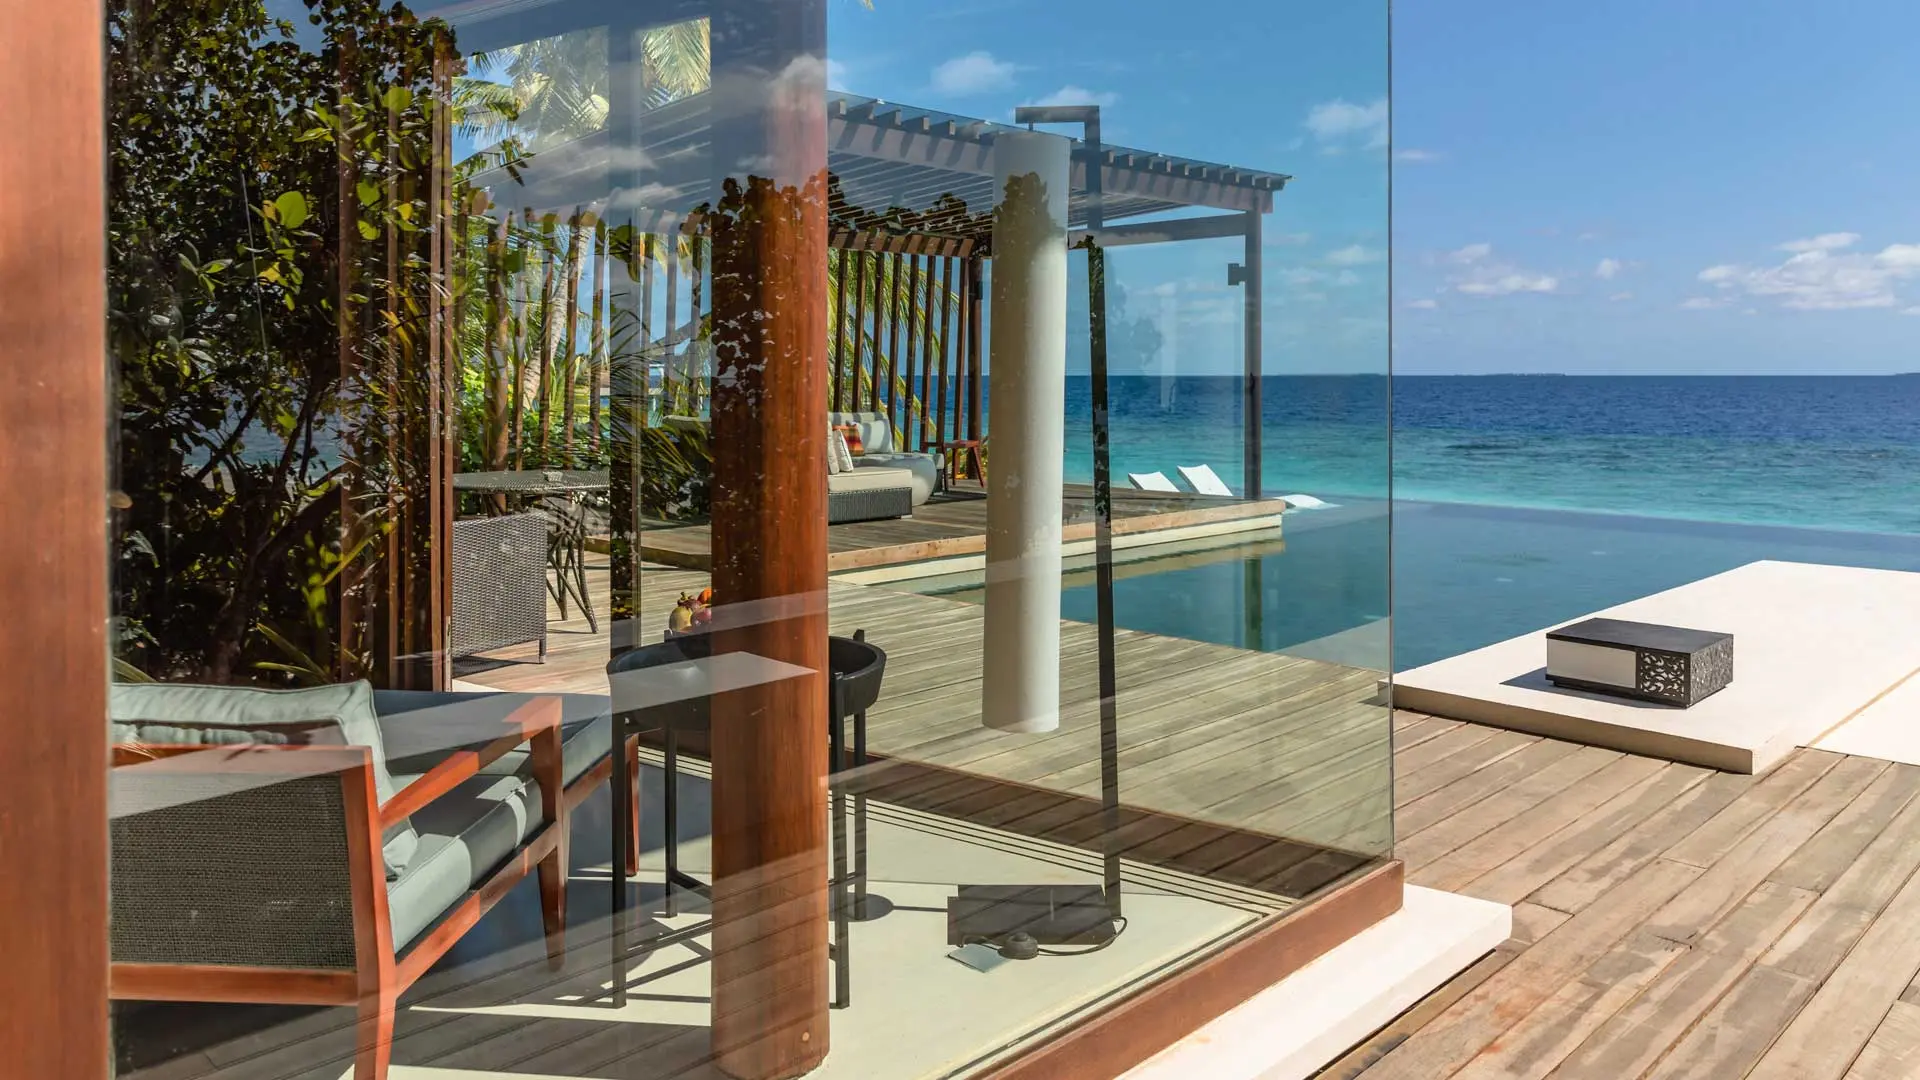 Hotel review Accommodation' - Park Hyatt Maldives Hadahaa - 1